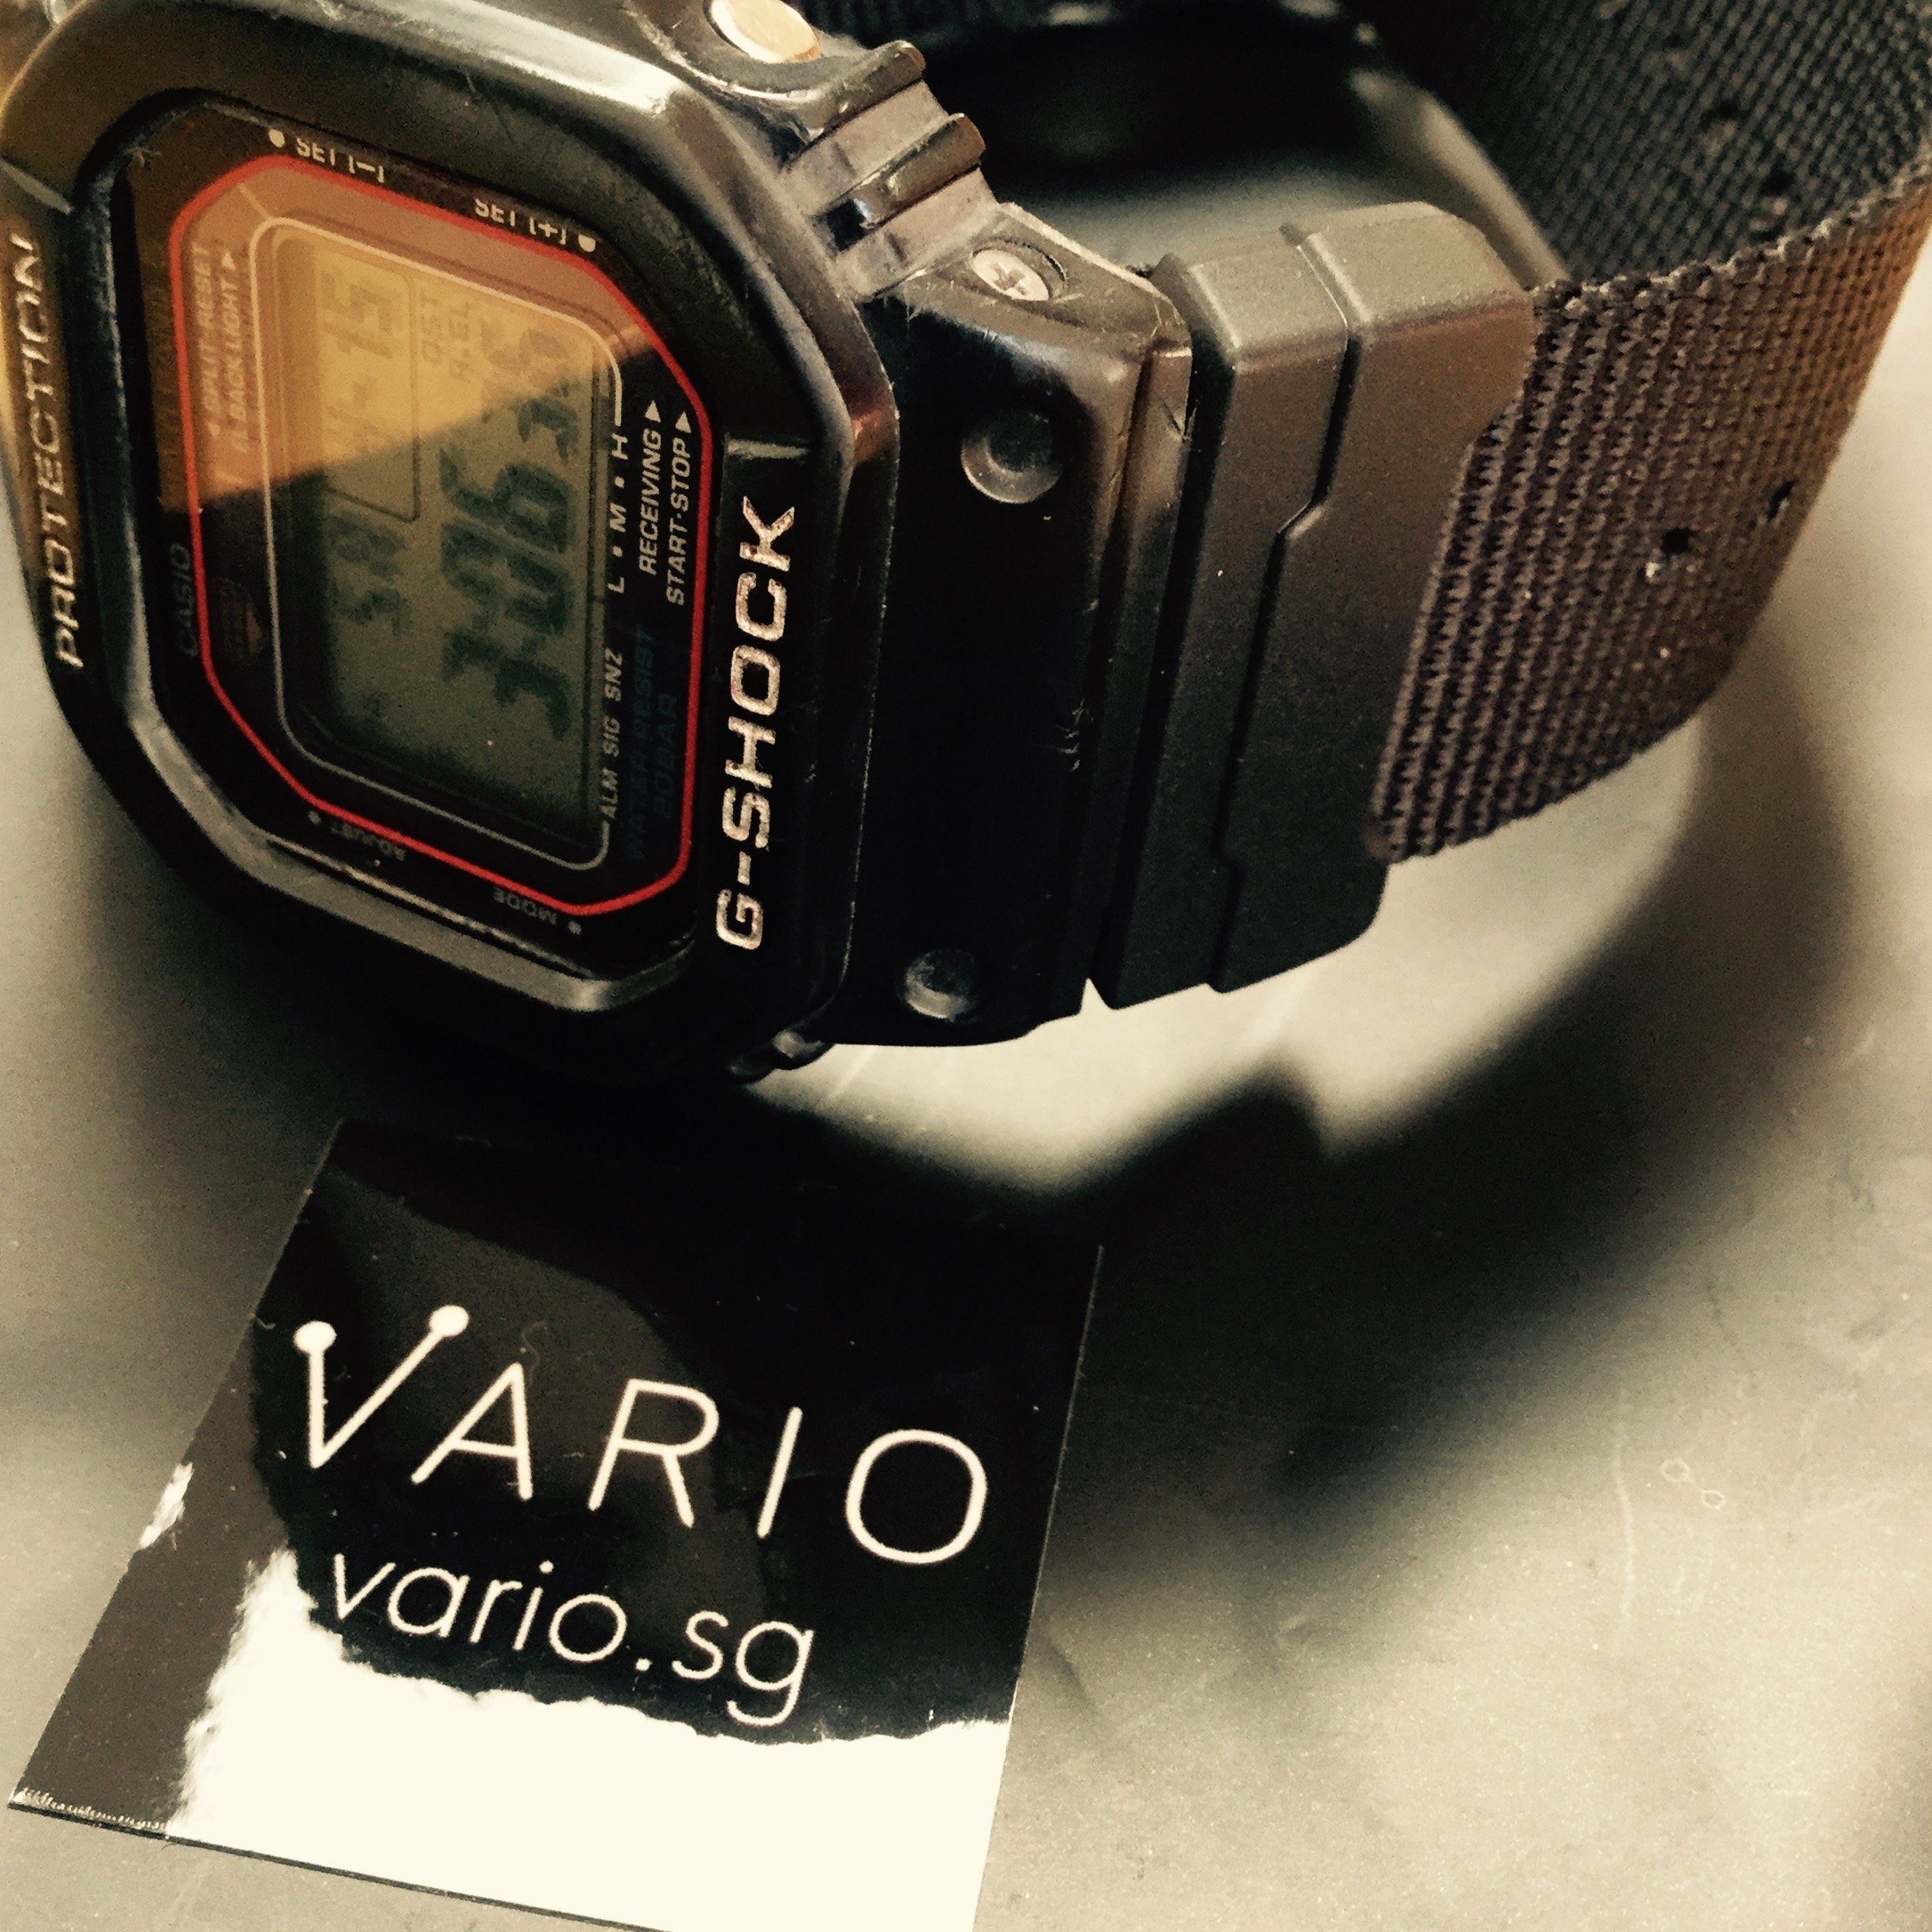 G-Shock DW5600 on Vario kit by #varioeveryday member Darly